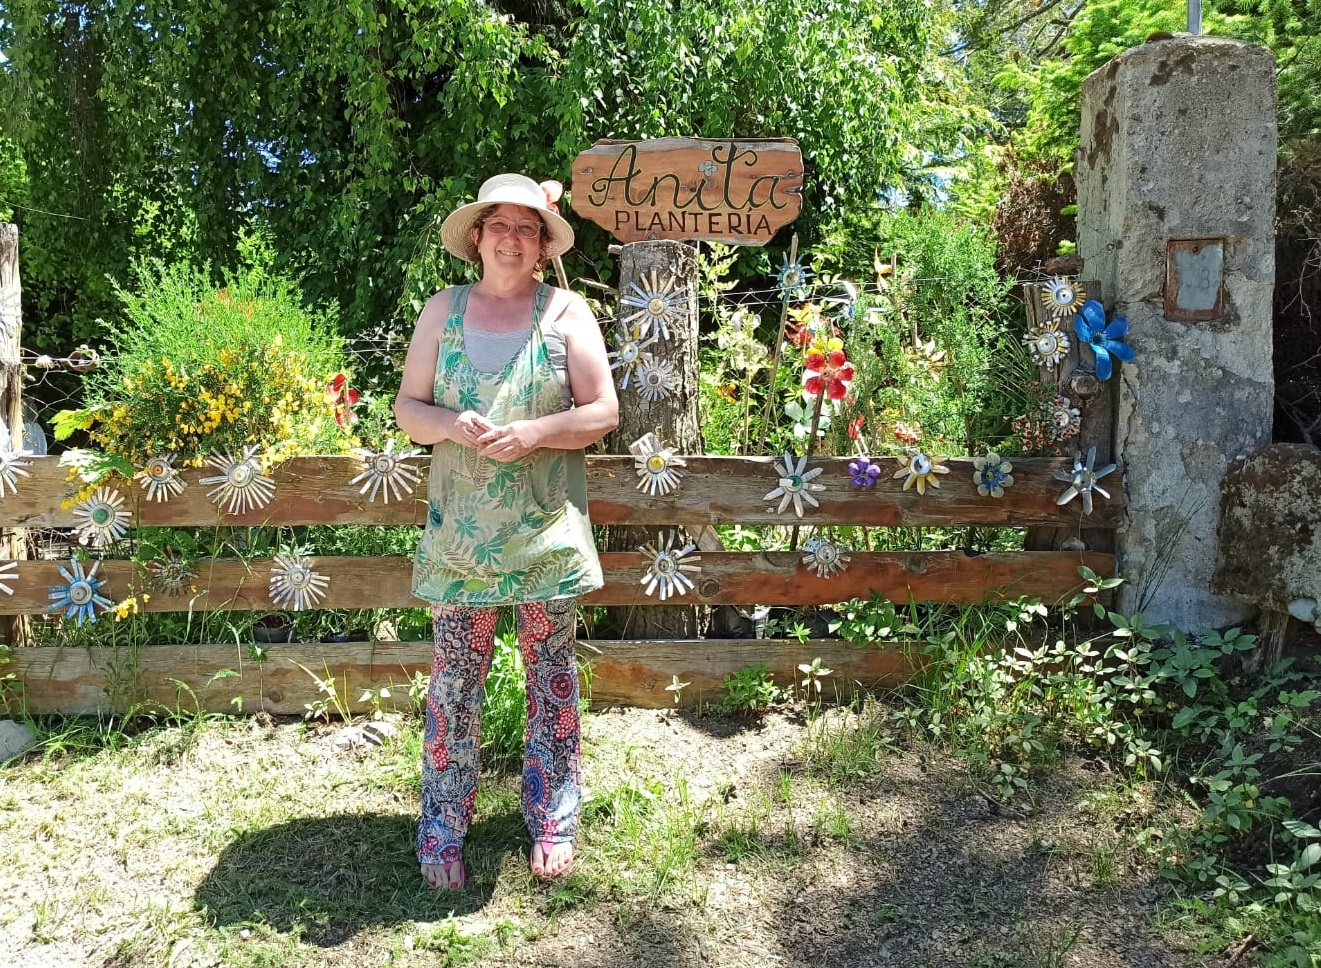 Emprendedores locales: “Plantería Anita”, un lugar lleno de color, aromas, paz y vida thumbnail